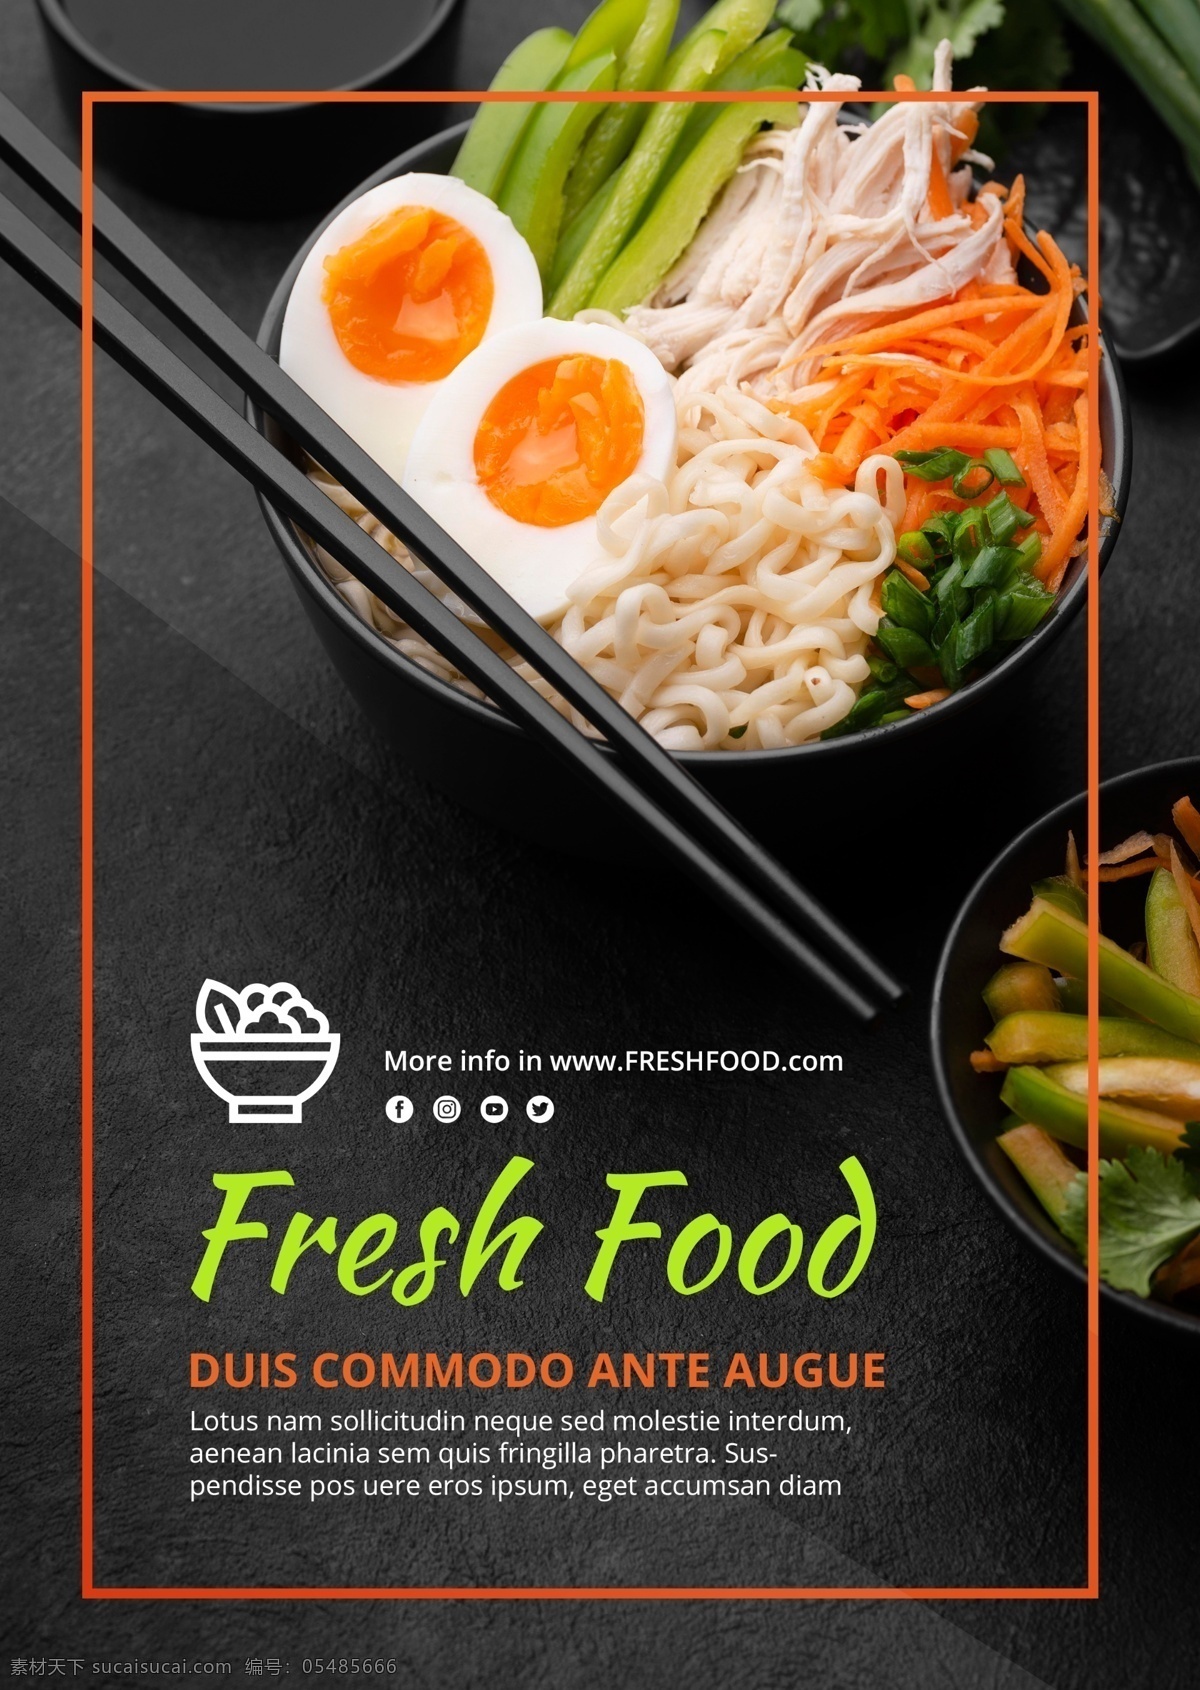 生鲜 食品 广告 模板 新鲜食物 美食海报 美食招贴 健康食物 绿色食物 面条